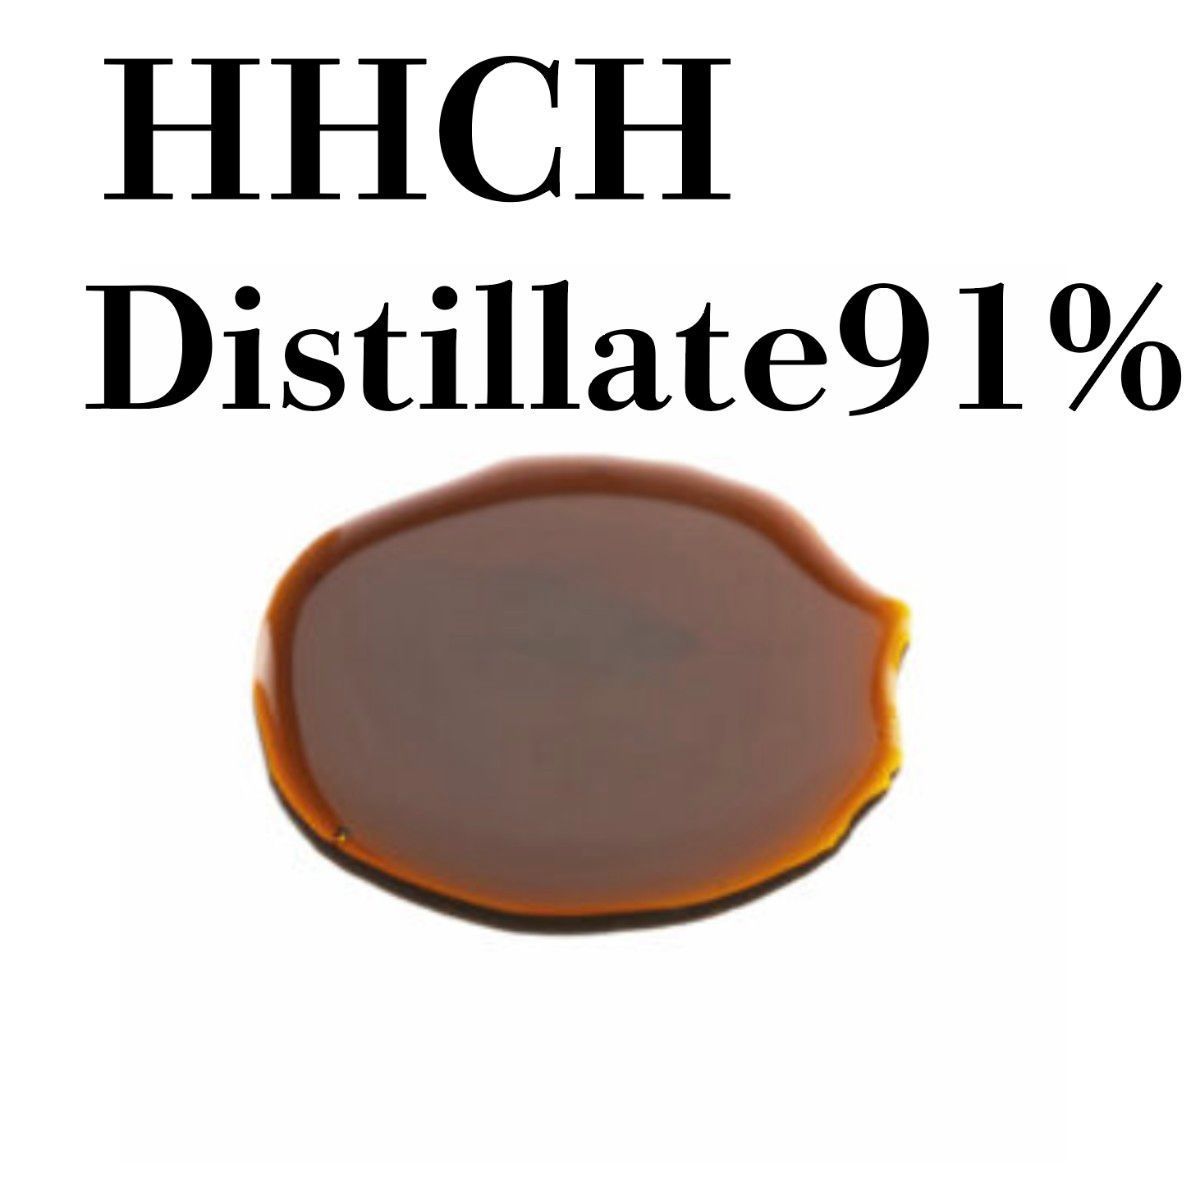 【12月スーパーSALE 15%OFF】 HHCH Distillate 91.46% 3g 原料 高濃度 #HHch ビューティー、ヘルスケア